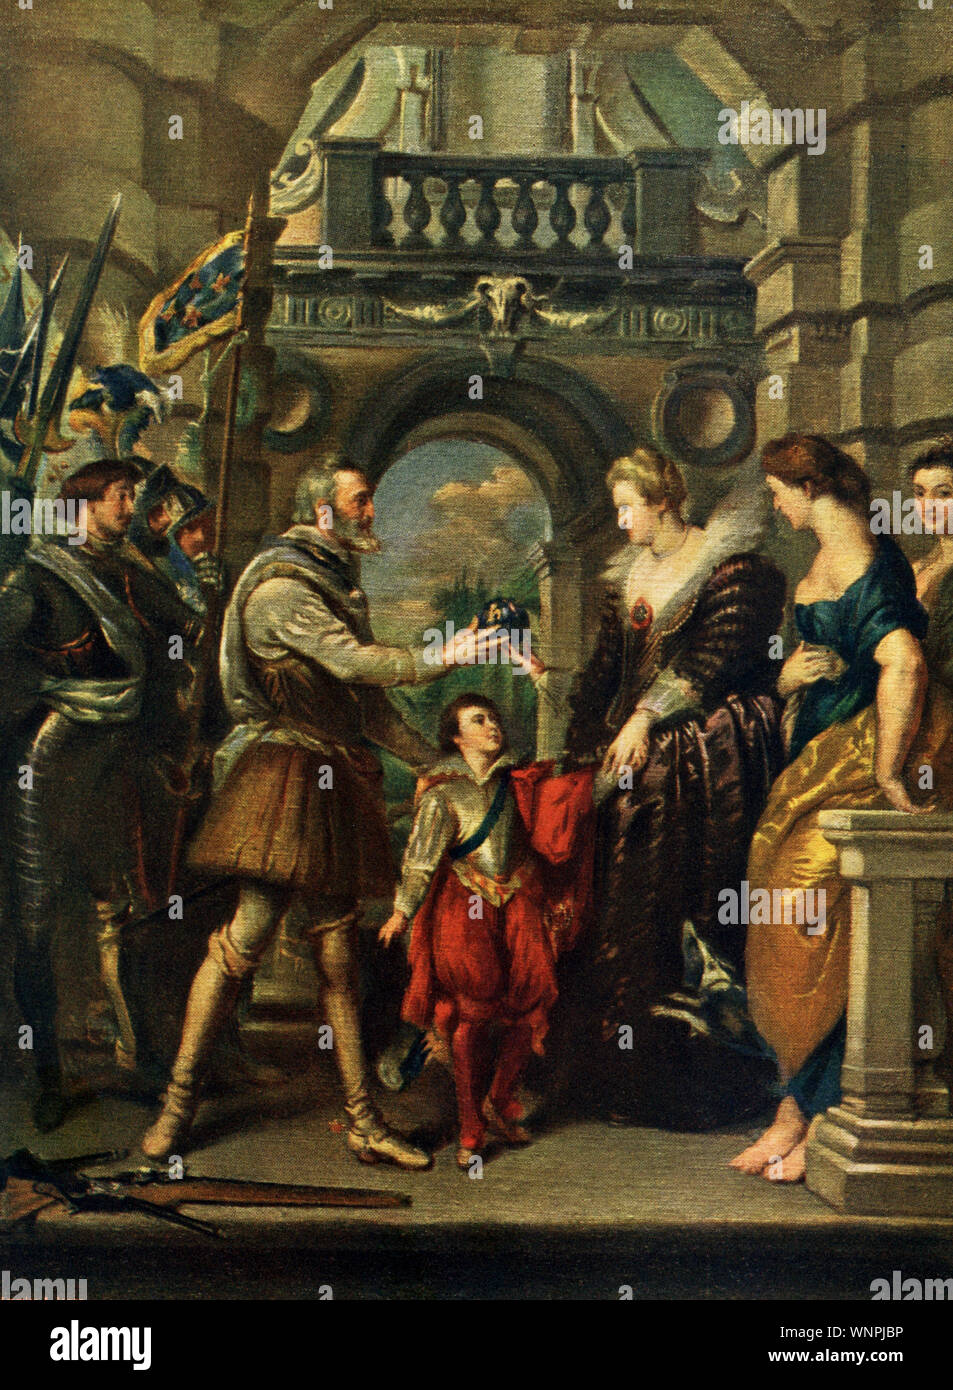 Cette peinture de P.P. Rubens (1577-1640) montre le roi Henry IV (mort de la France et de son épouse Maria de' Medici (mort en 1642). Ici, nous voyons le roi juste avant son départ pour la guerre contre l'Allemagne. Il est logé au Louvre à Paris. Celui-ci est intitulé Lot de la régence et fait partie du cycle d'Henri IV qui a été commandé par Marie de Médicis. Ici, Henry IV confie à Marie à la fois la régence de la France et de la garde du dauphin peu avant sa première guerre mondiale et la mort éventuelle. À la droite de Marie est la figure de la prudence. Banque D'Images